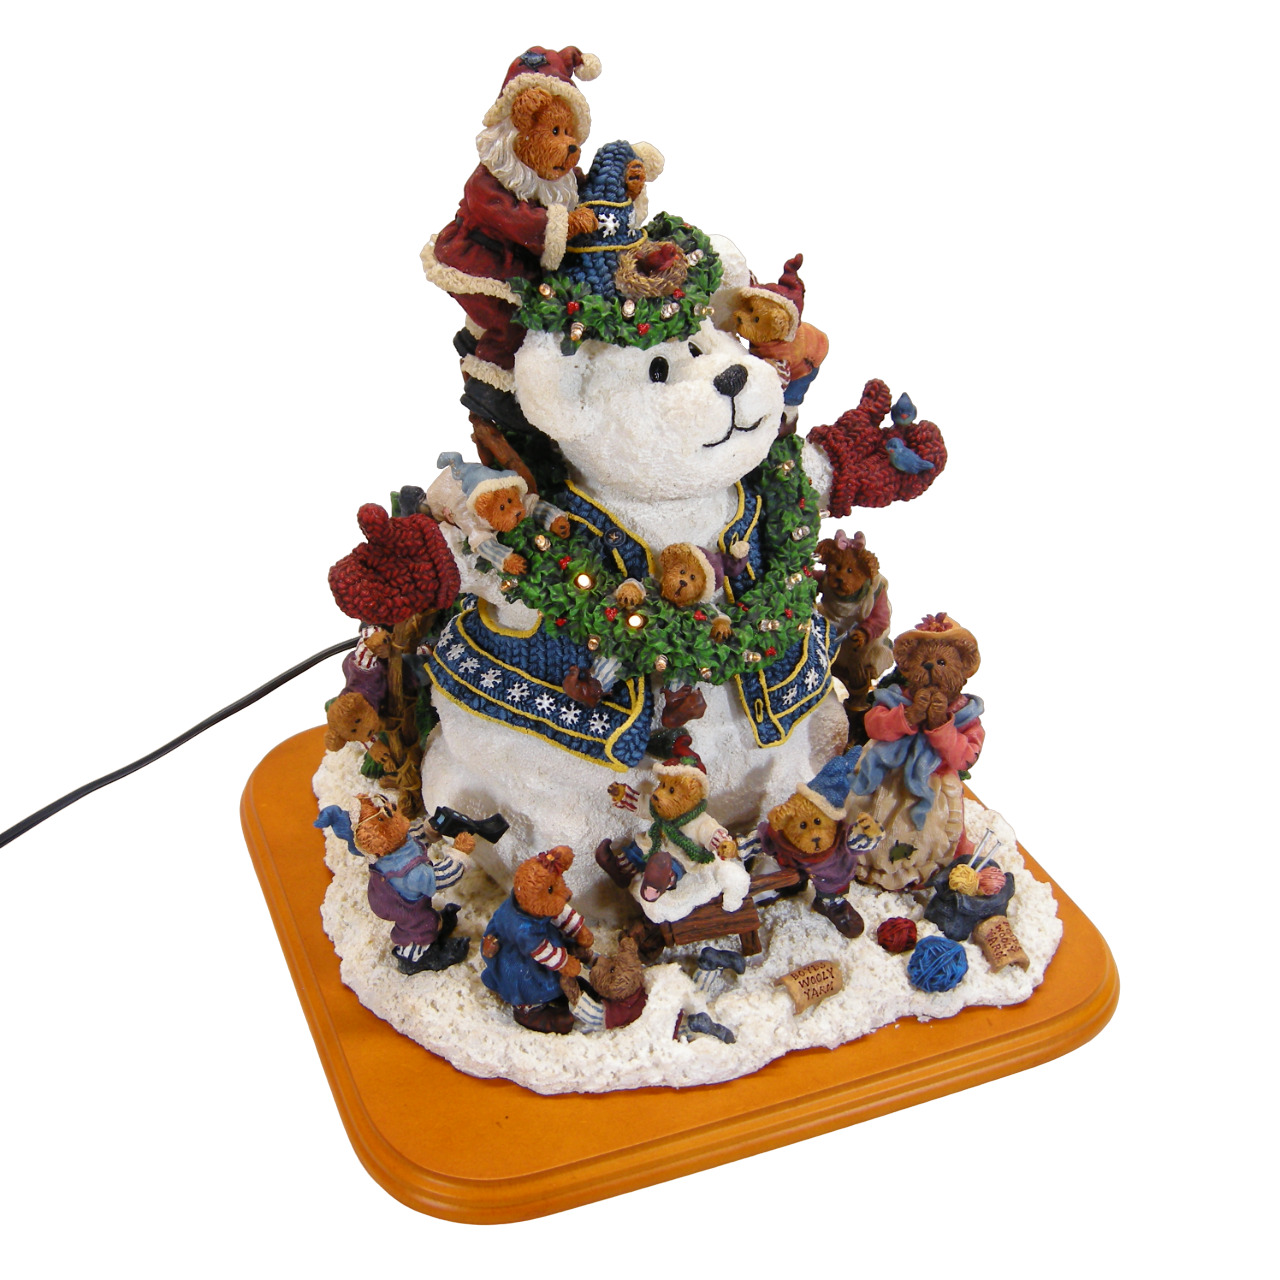 Danbury Mint Boyd's Bears Snow Bear Christmas Figurine Lighted - EUC